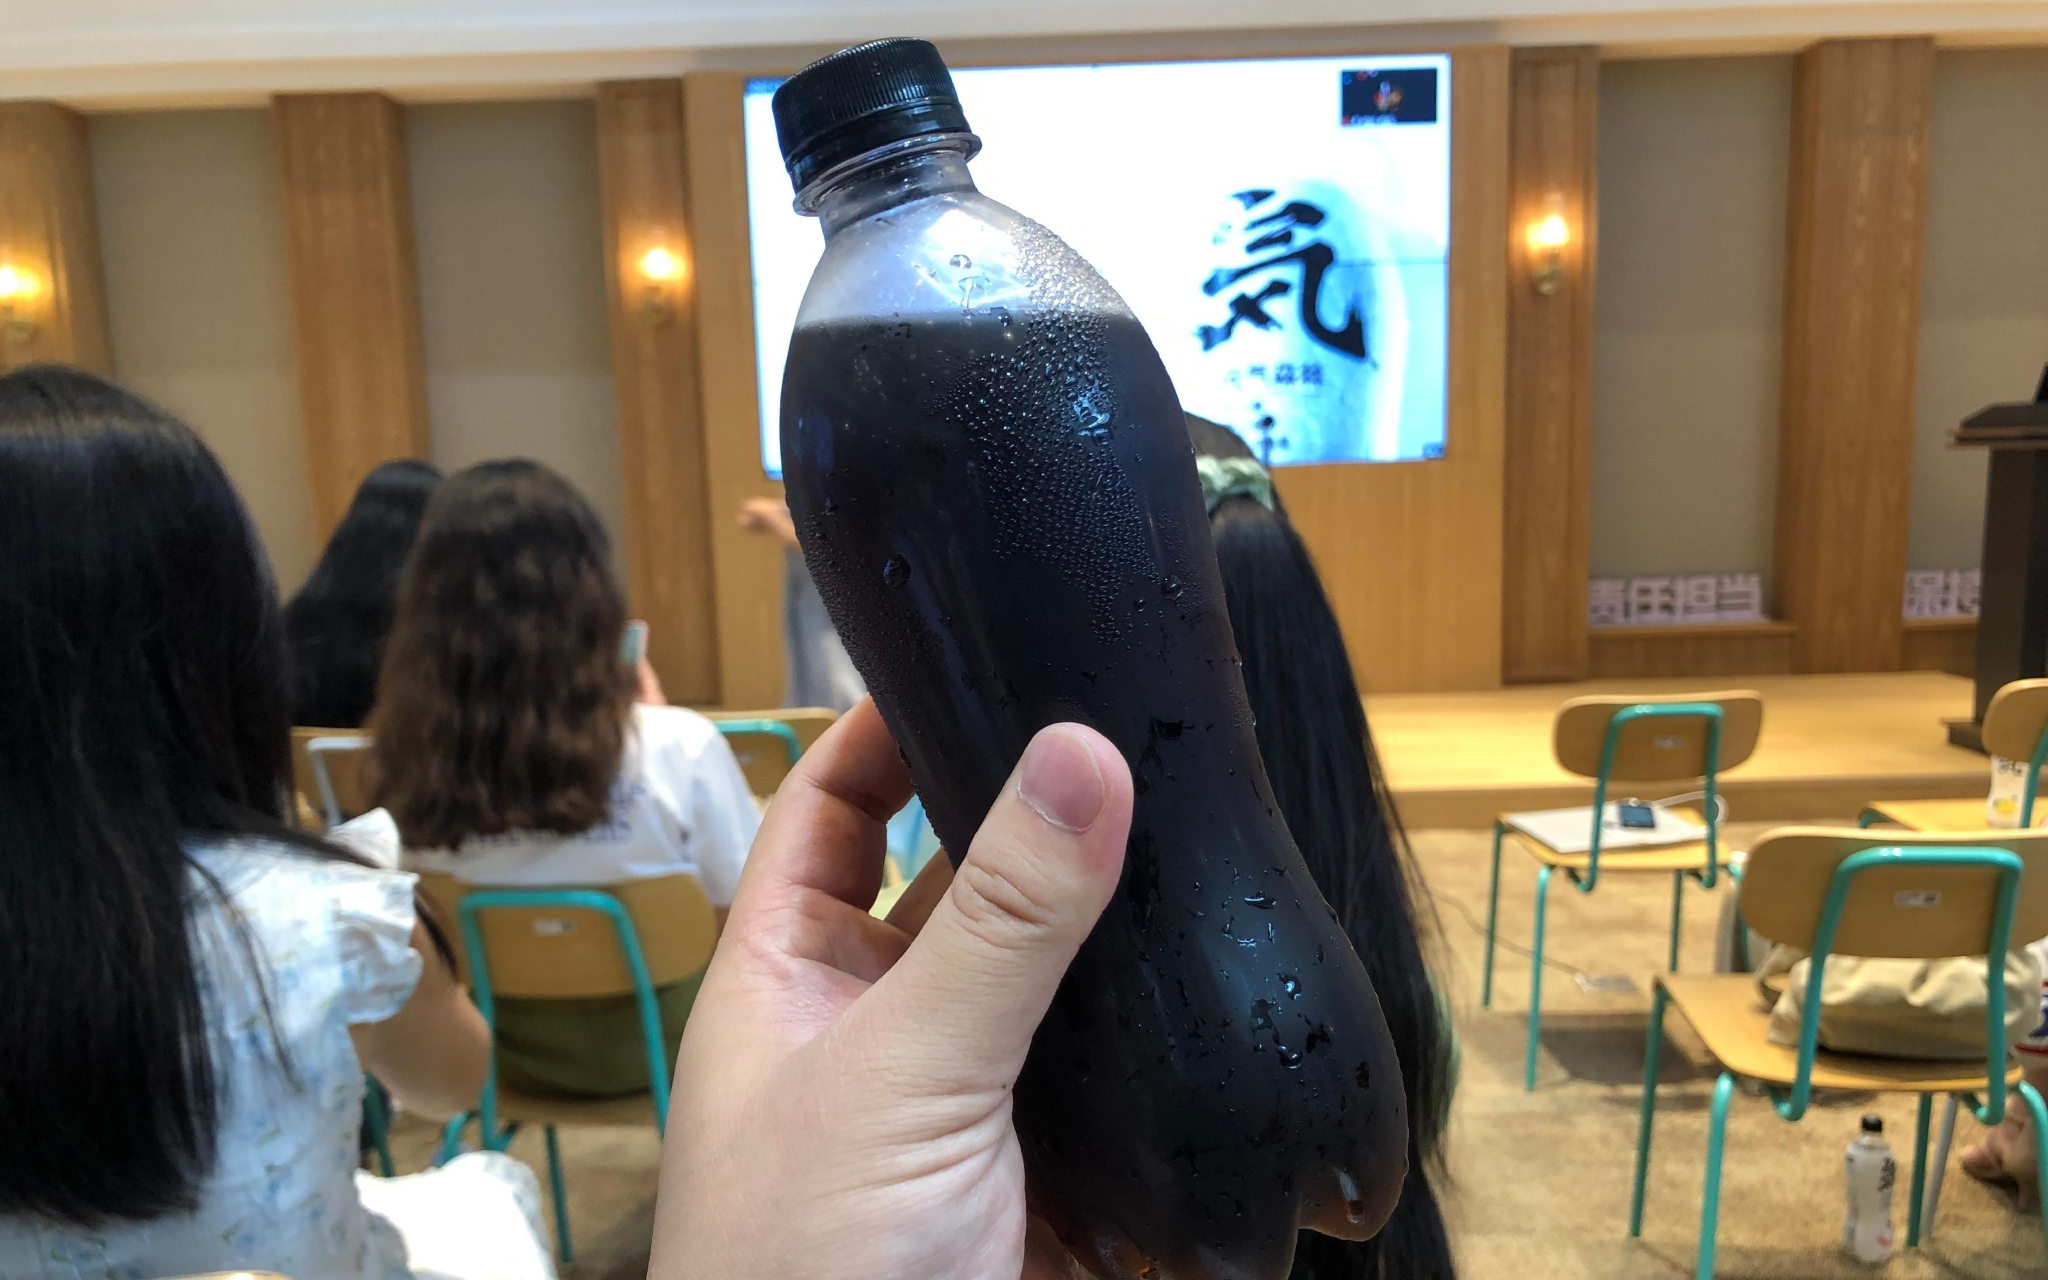 由于产品未上市，新京报记者拿到的“元气可乐”是无标签版。 新京报记者 王子扬 摄